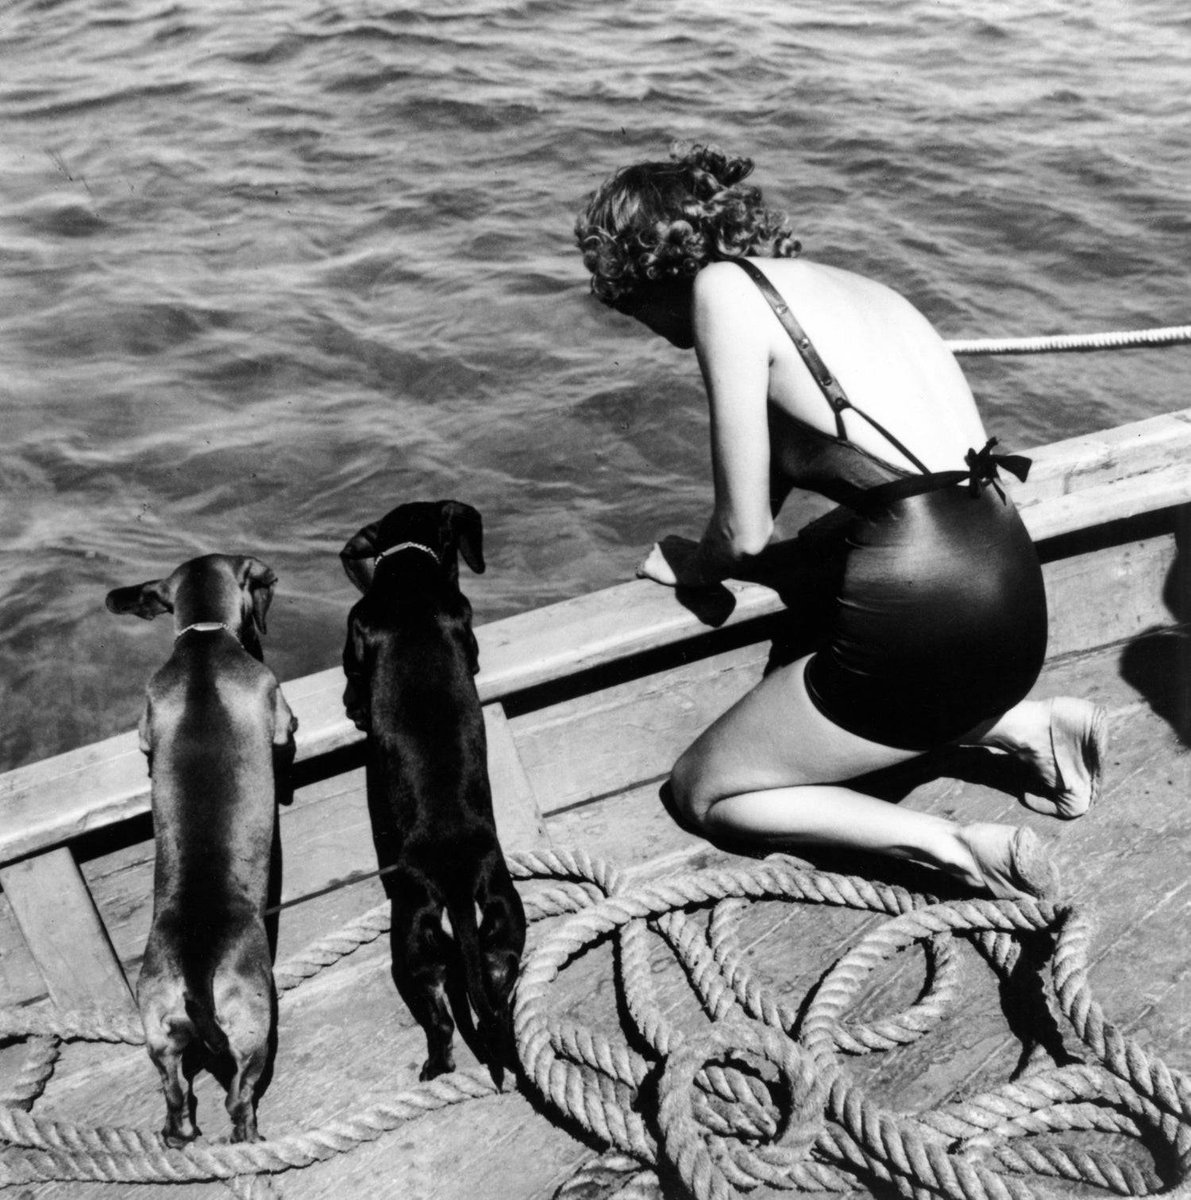 Califòrnia, 1940. Dona amb dos gossos.
📷 Toni Frissell
Font: Artnet